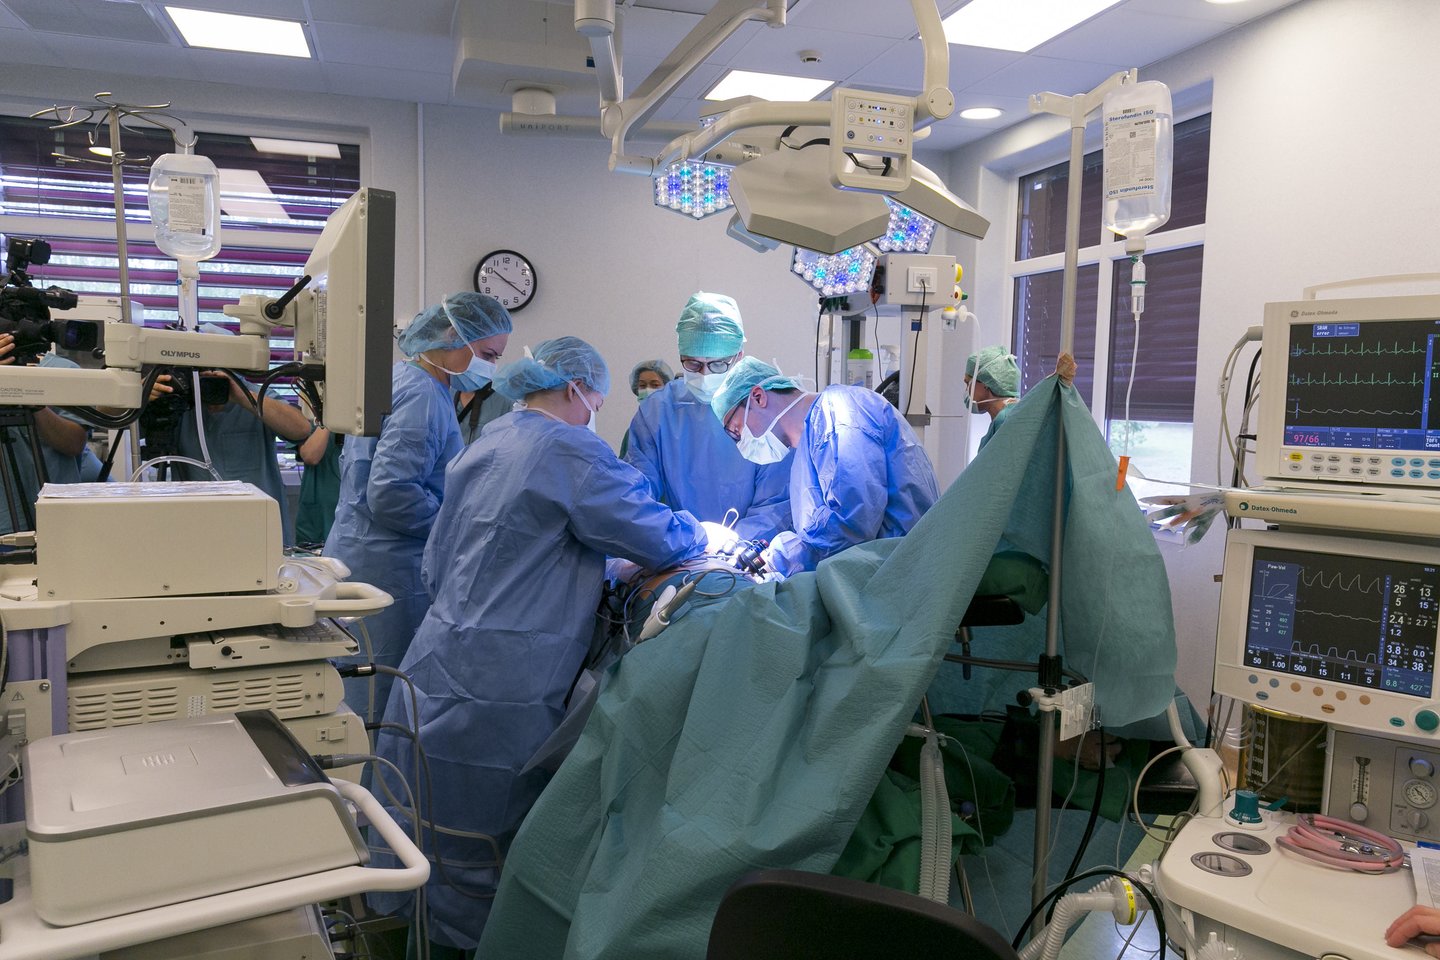 atliekama 300-oji inksto transplantacija iš gyvojo donoro operacija donoryste<br>T.Bauro nuotr.